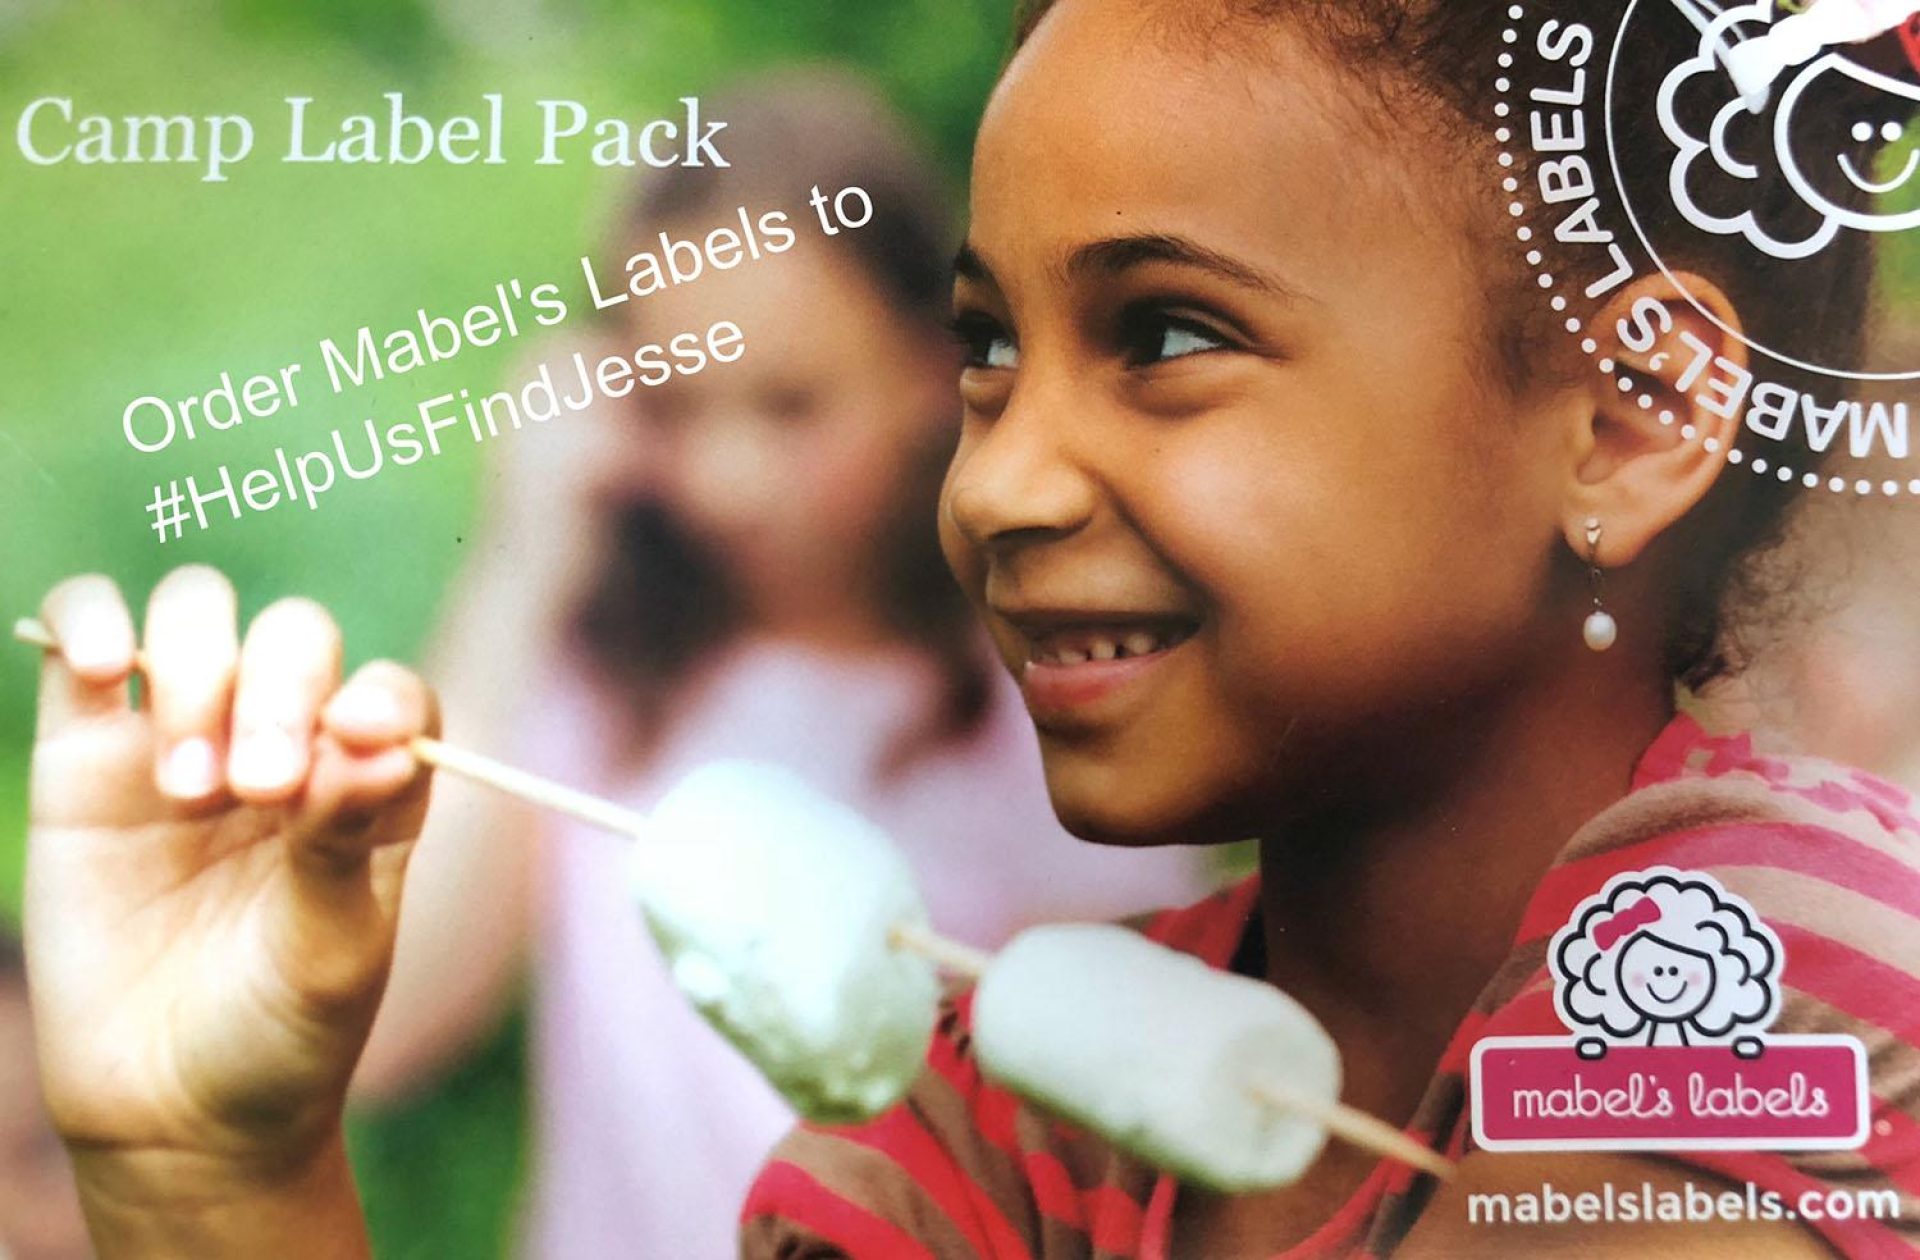 Mabel's Labels #HelpUsFindJesse